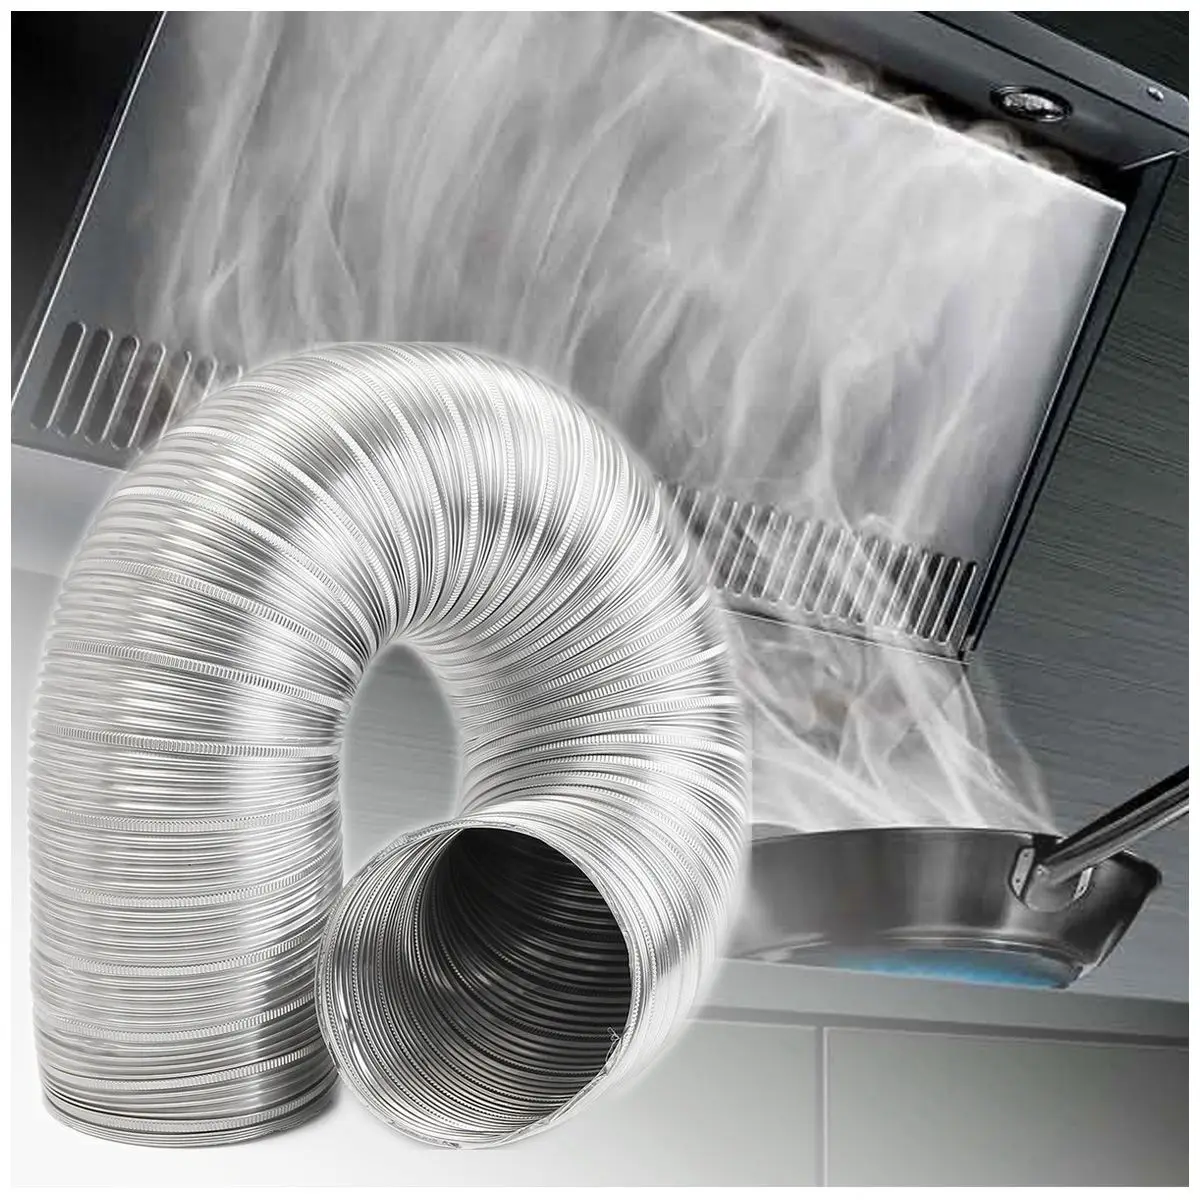 Высокое качество 1 м алюминиевая фольга ванная кухня вытяжка вентилятор и вытяжка Гибкая воздуховодная труба, 125 мм